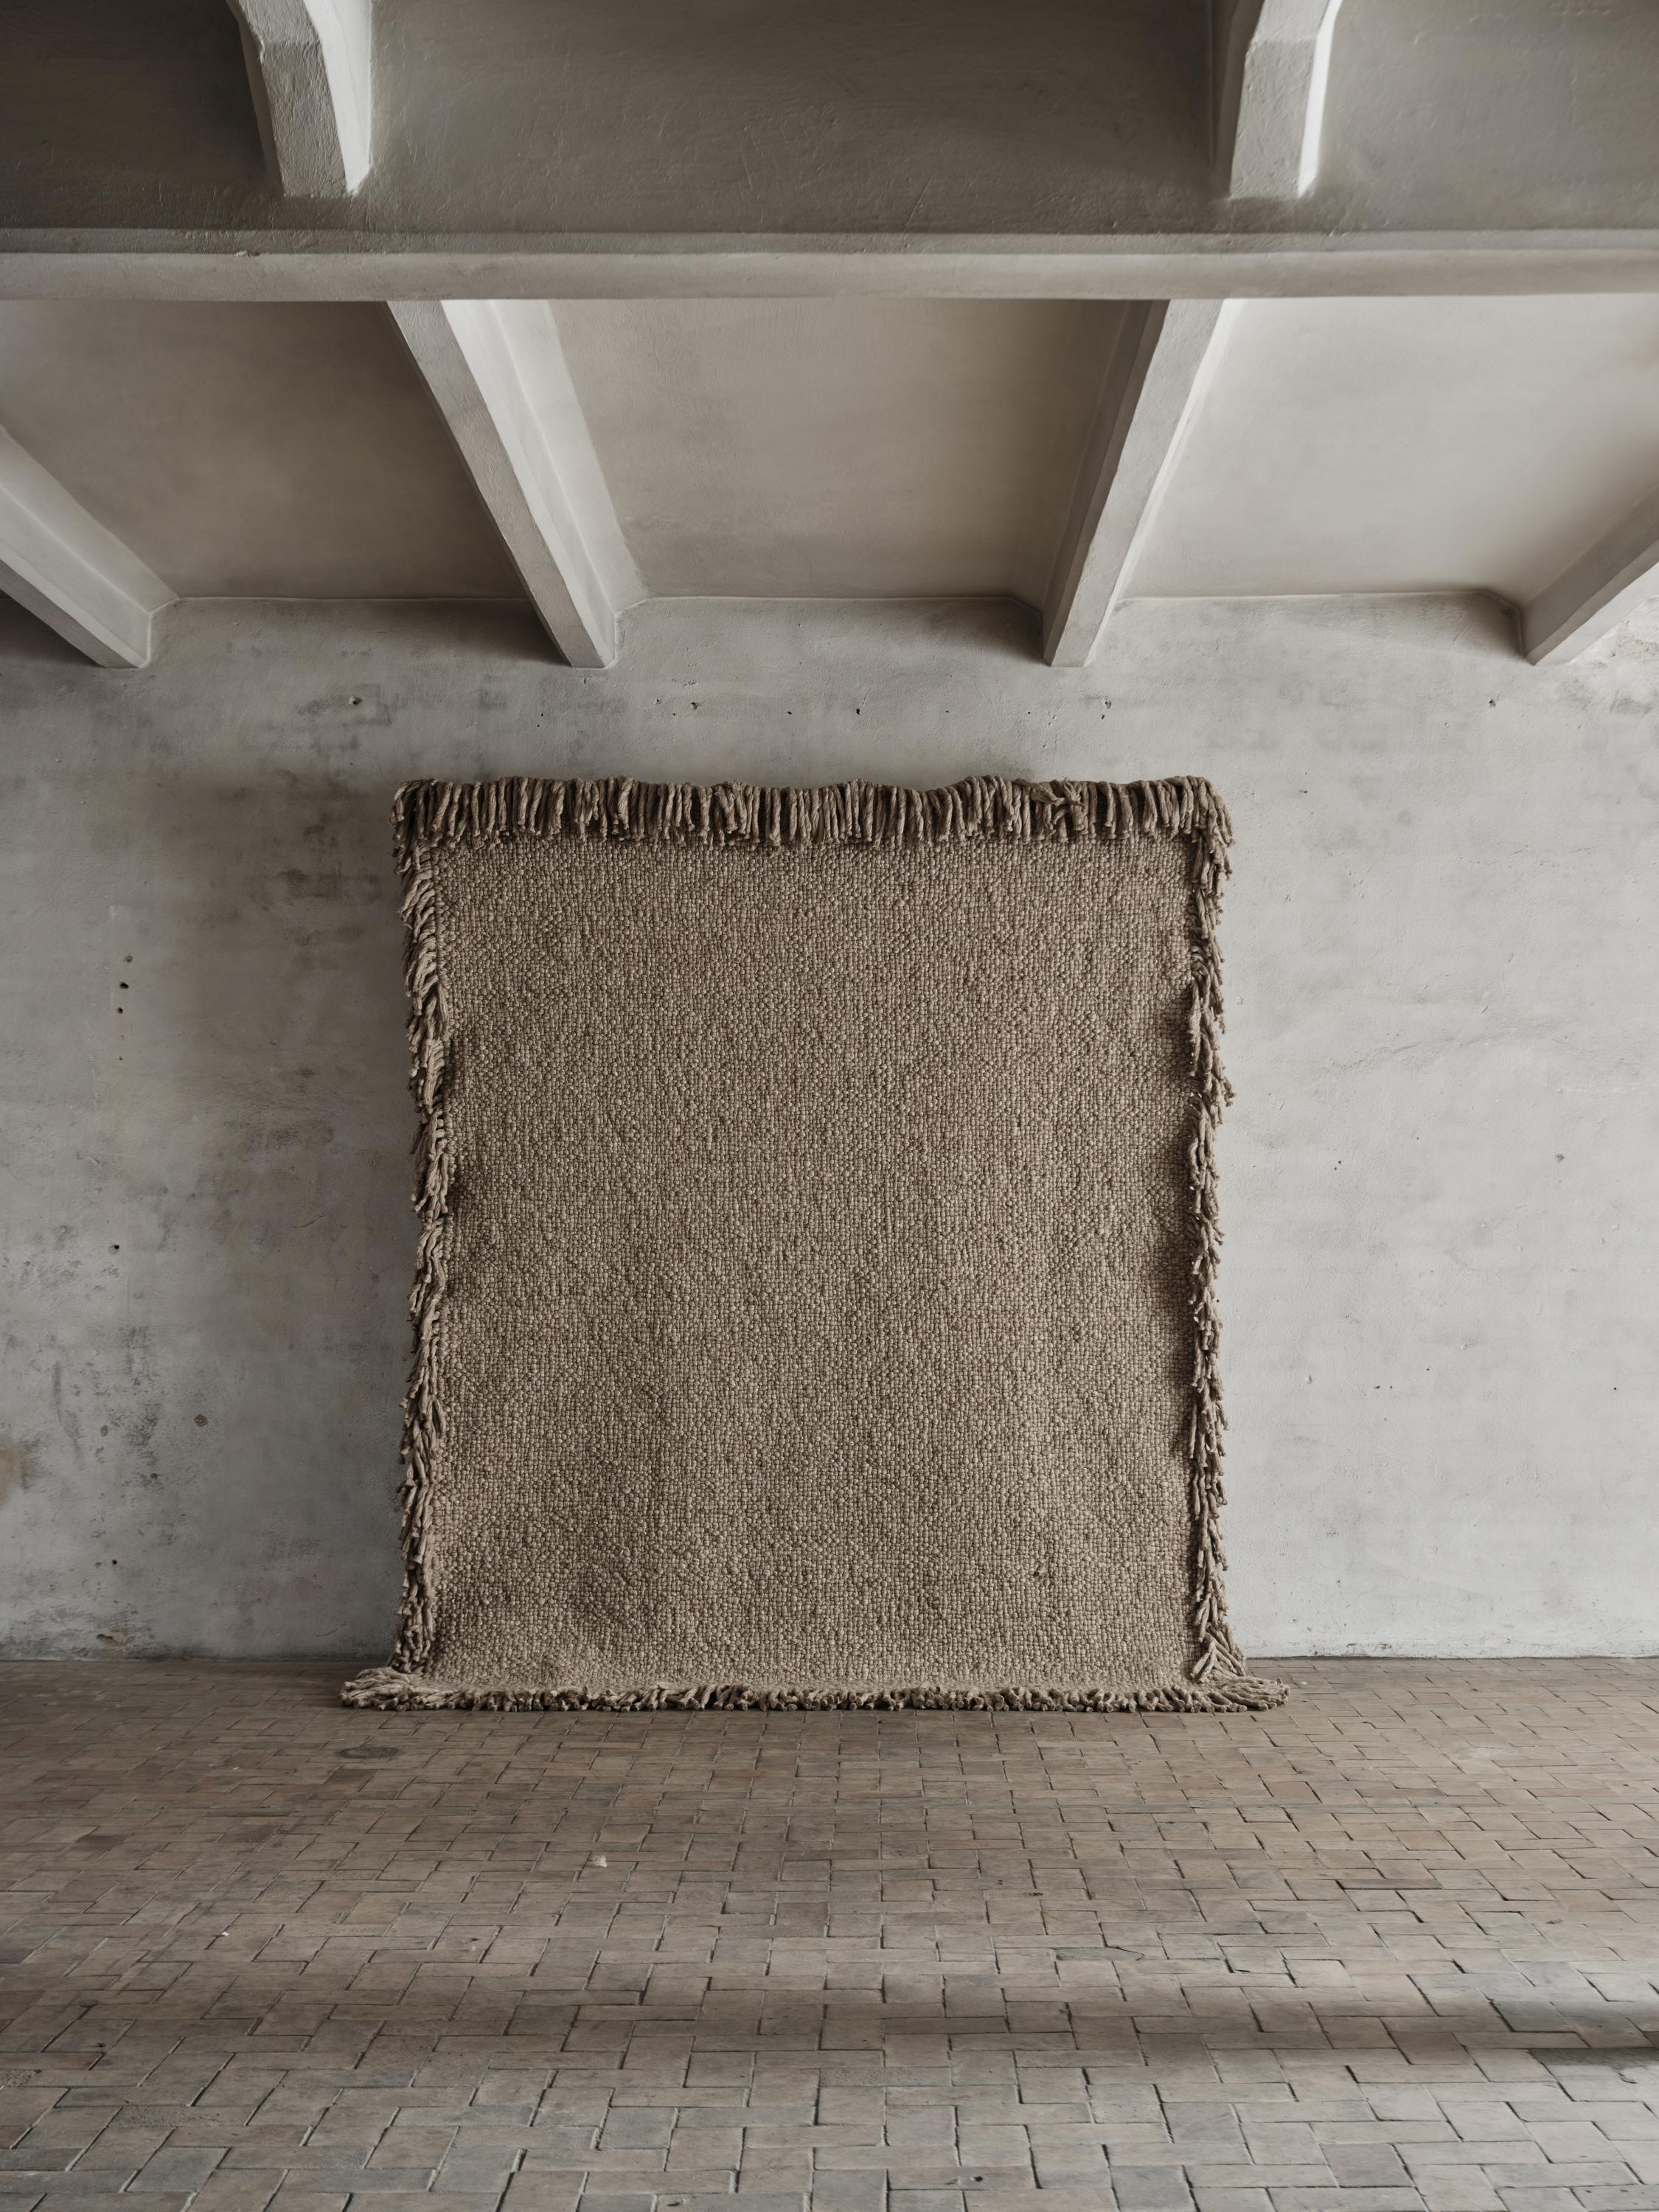 Teppich Nr.11 von Cappelen Dimyr
Abmessungen: D240 x H320 cm
MATERIALIEN: 100% Wolle 

no.11 ist ein schwerer, kompakter und rustikaler Teppich aus luxuriöser, dicker Wolle, der in klassischer Korbflechttechnik gewebt ist. Das kräftige und